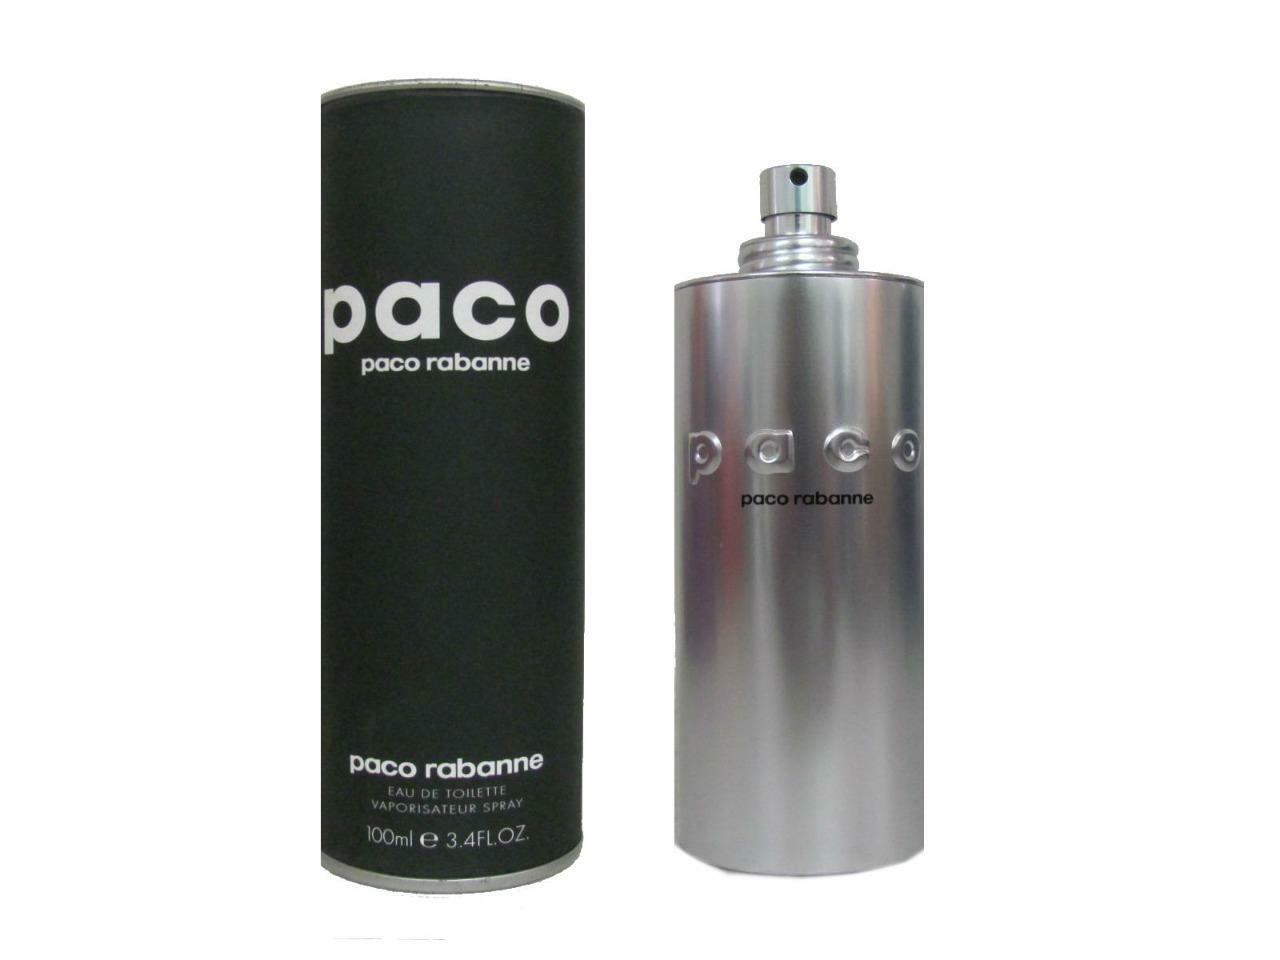 Paco By Paco Rabanne for Men & Women Eau De Toilette 100ml at Ratans Online Shop - Perfumes Wholesale and Retailer Fragrance